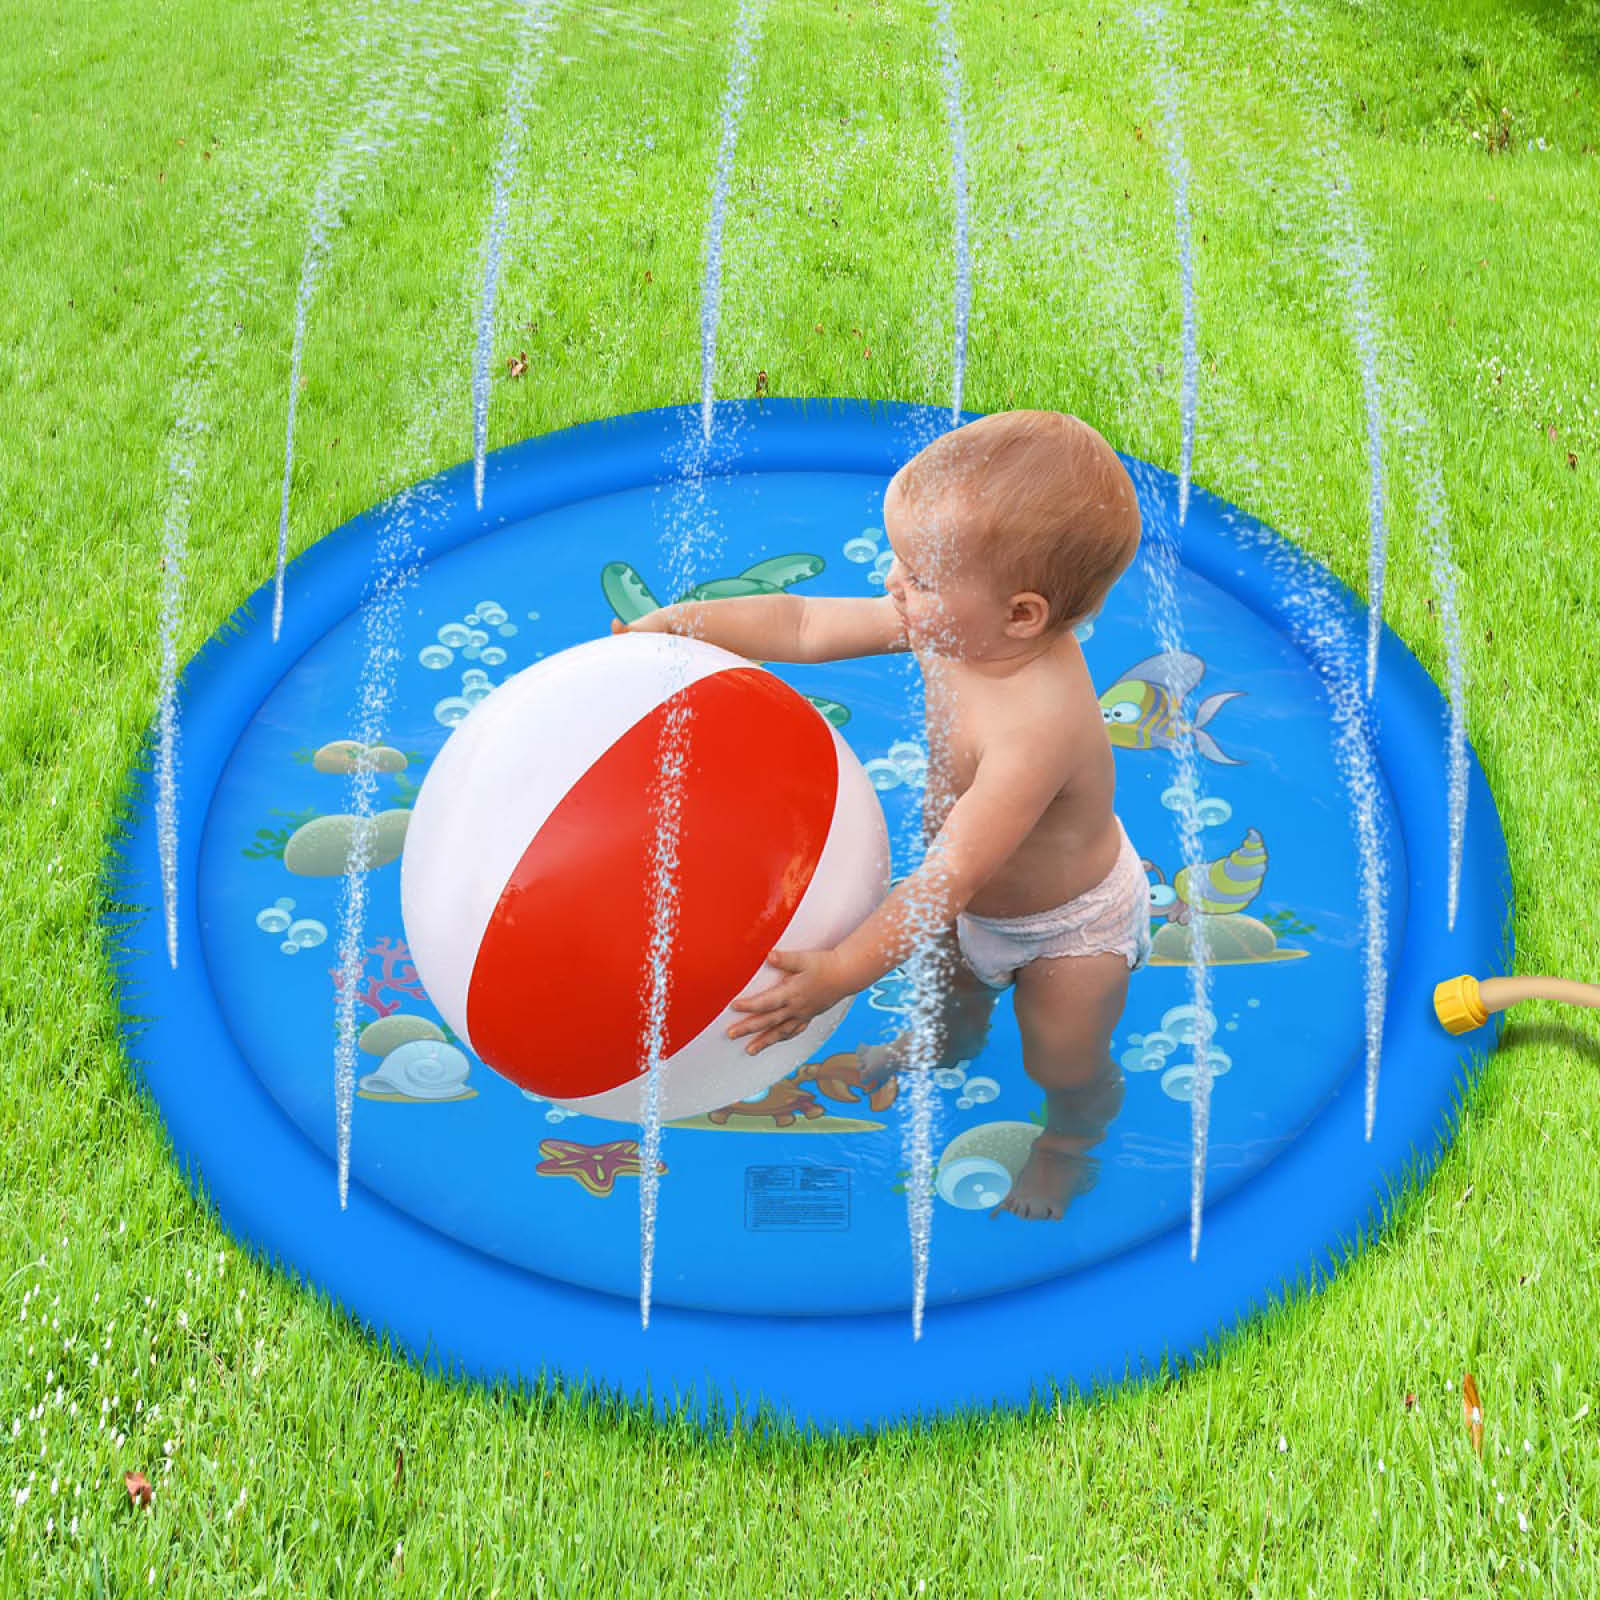 [直径170cm] VeroMan 子供用 プール 噴水 ホースに繋ぐだけ 水遊び 噴水マット プレイマット 庭 シャワー 幼児 (ブルー)